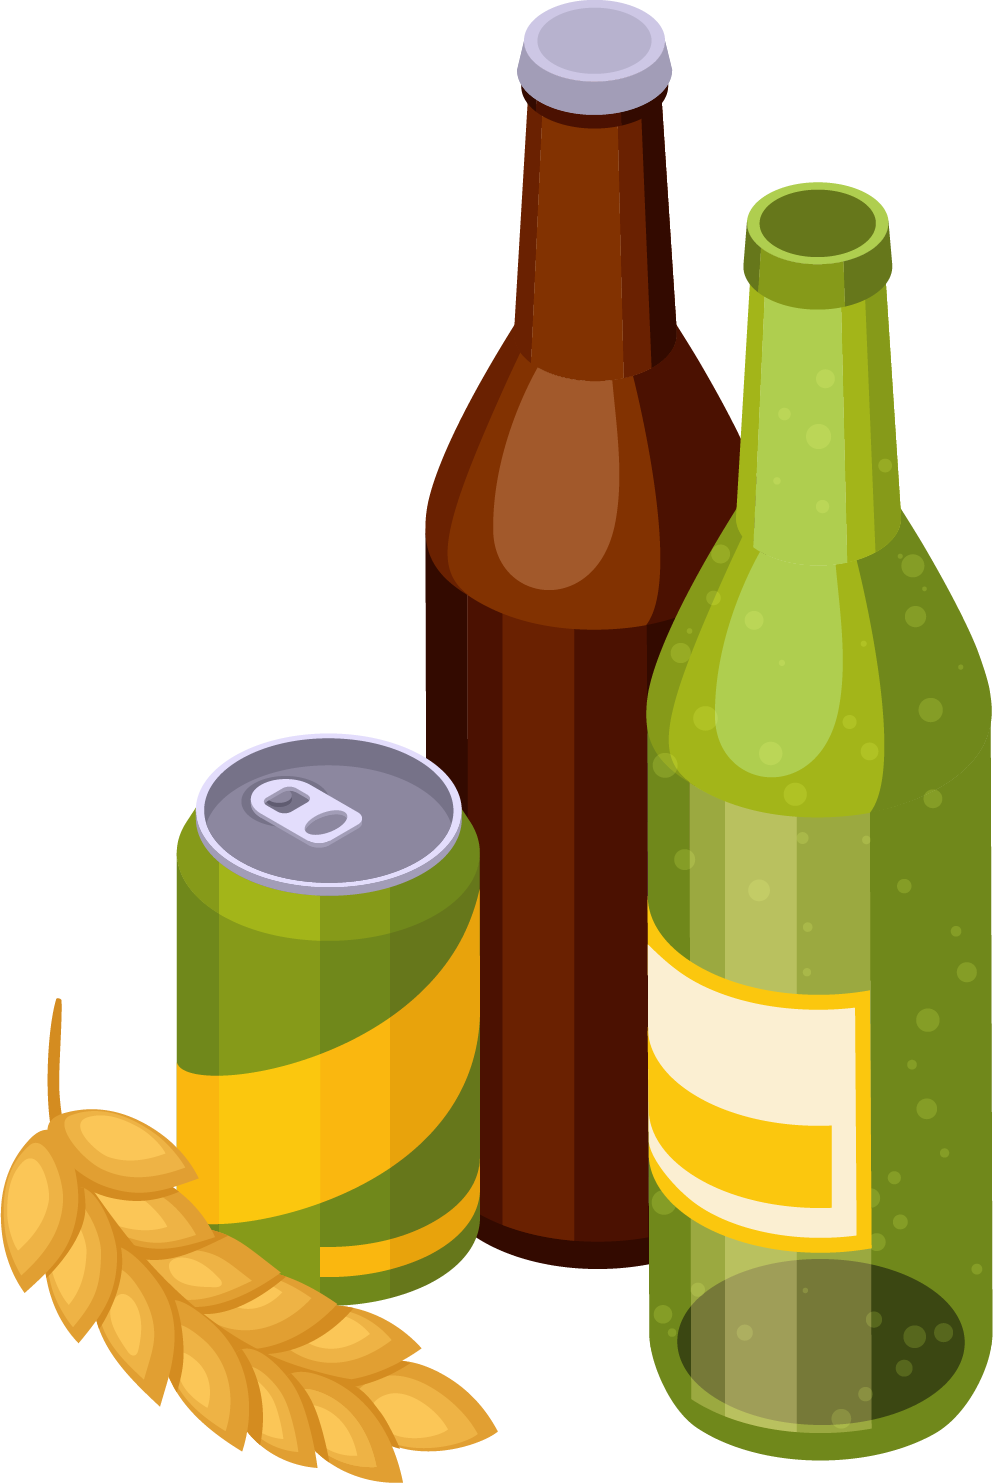 Controleer het etiket van je bier op wettelijke eisen, zowel blik als fles